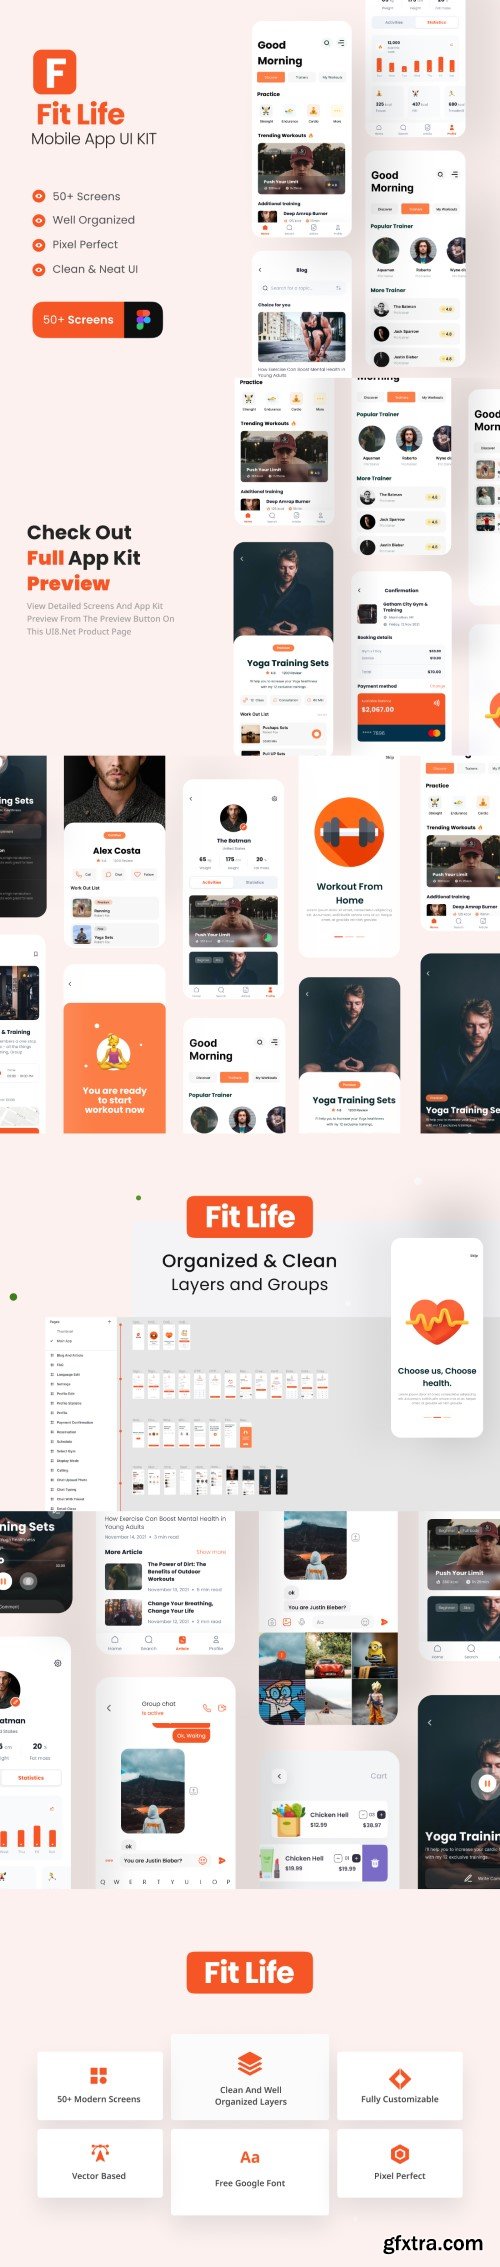 FitLife - Fitness App UI Kit